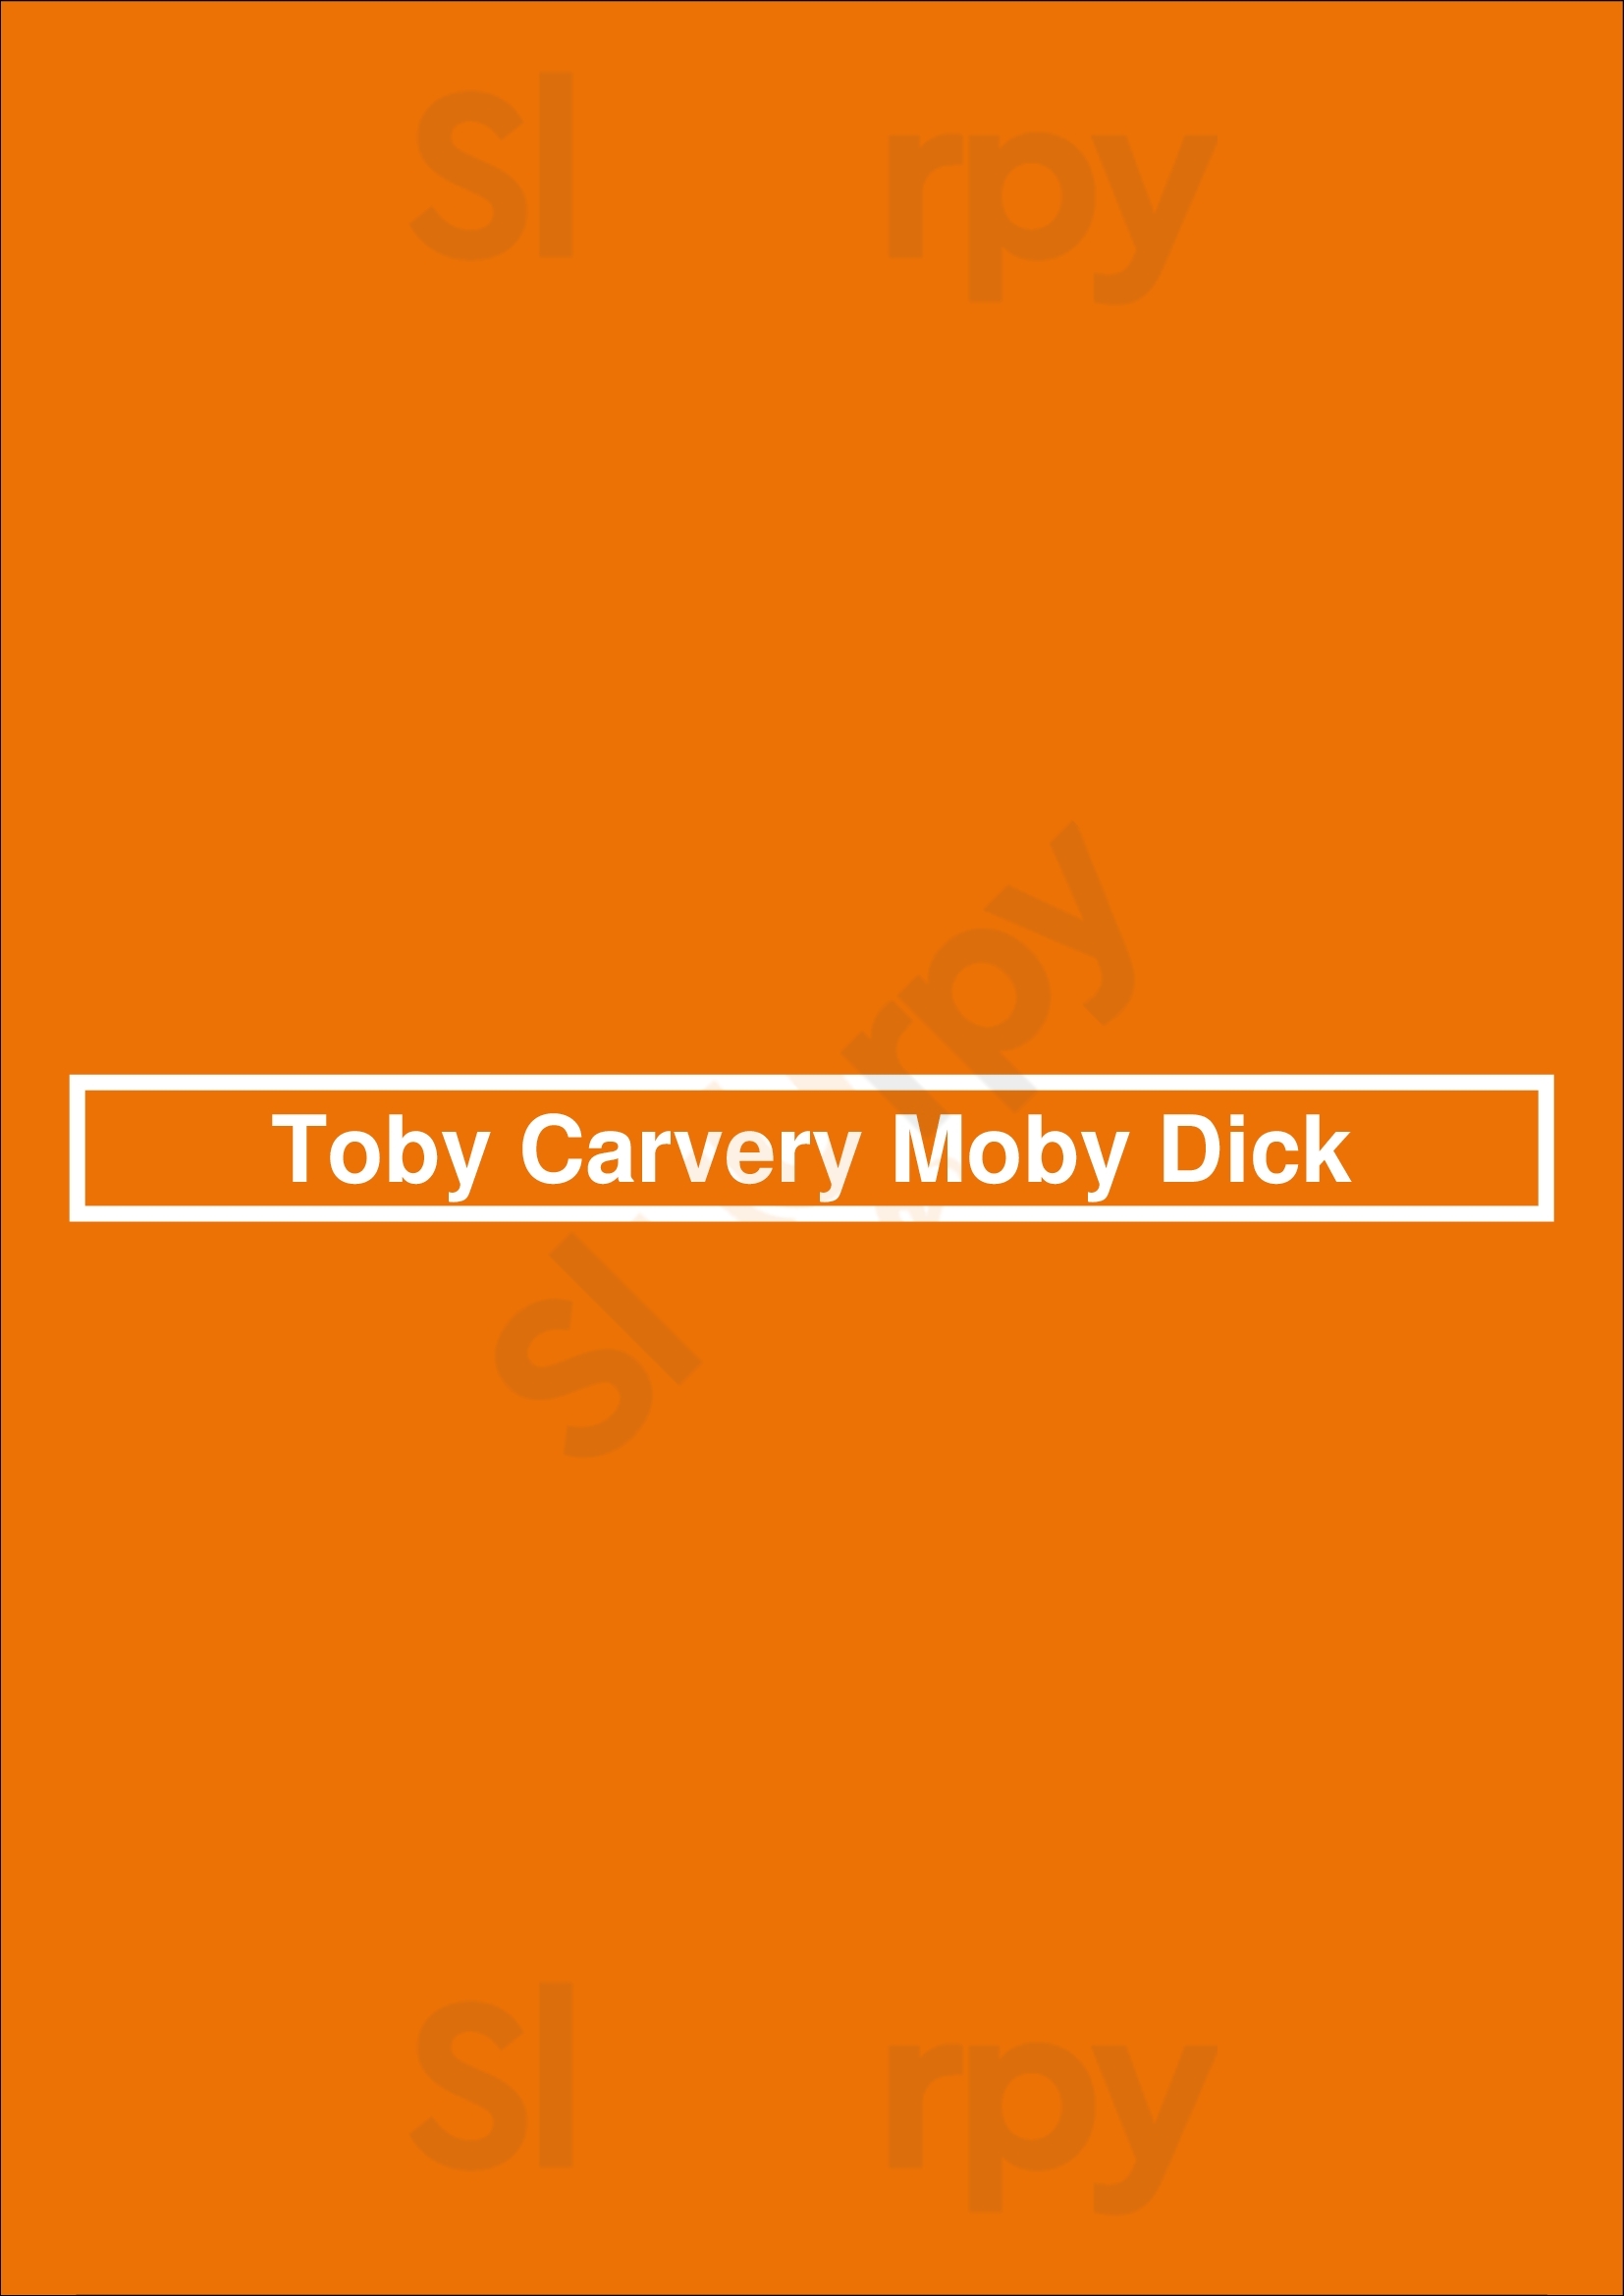 Toby Carvery Moby Dick Romford Menu - 1